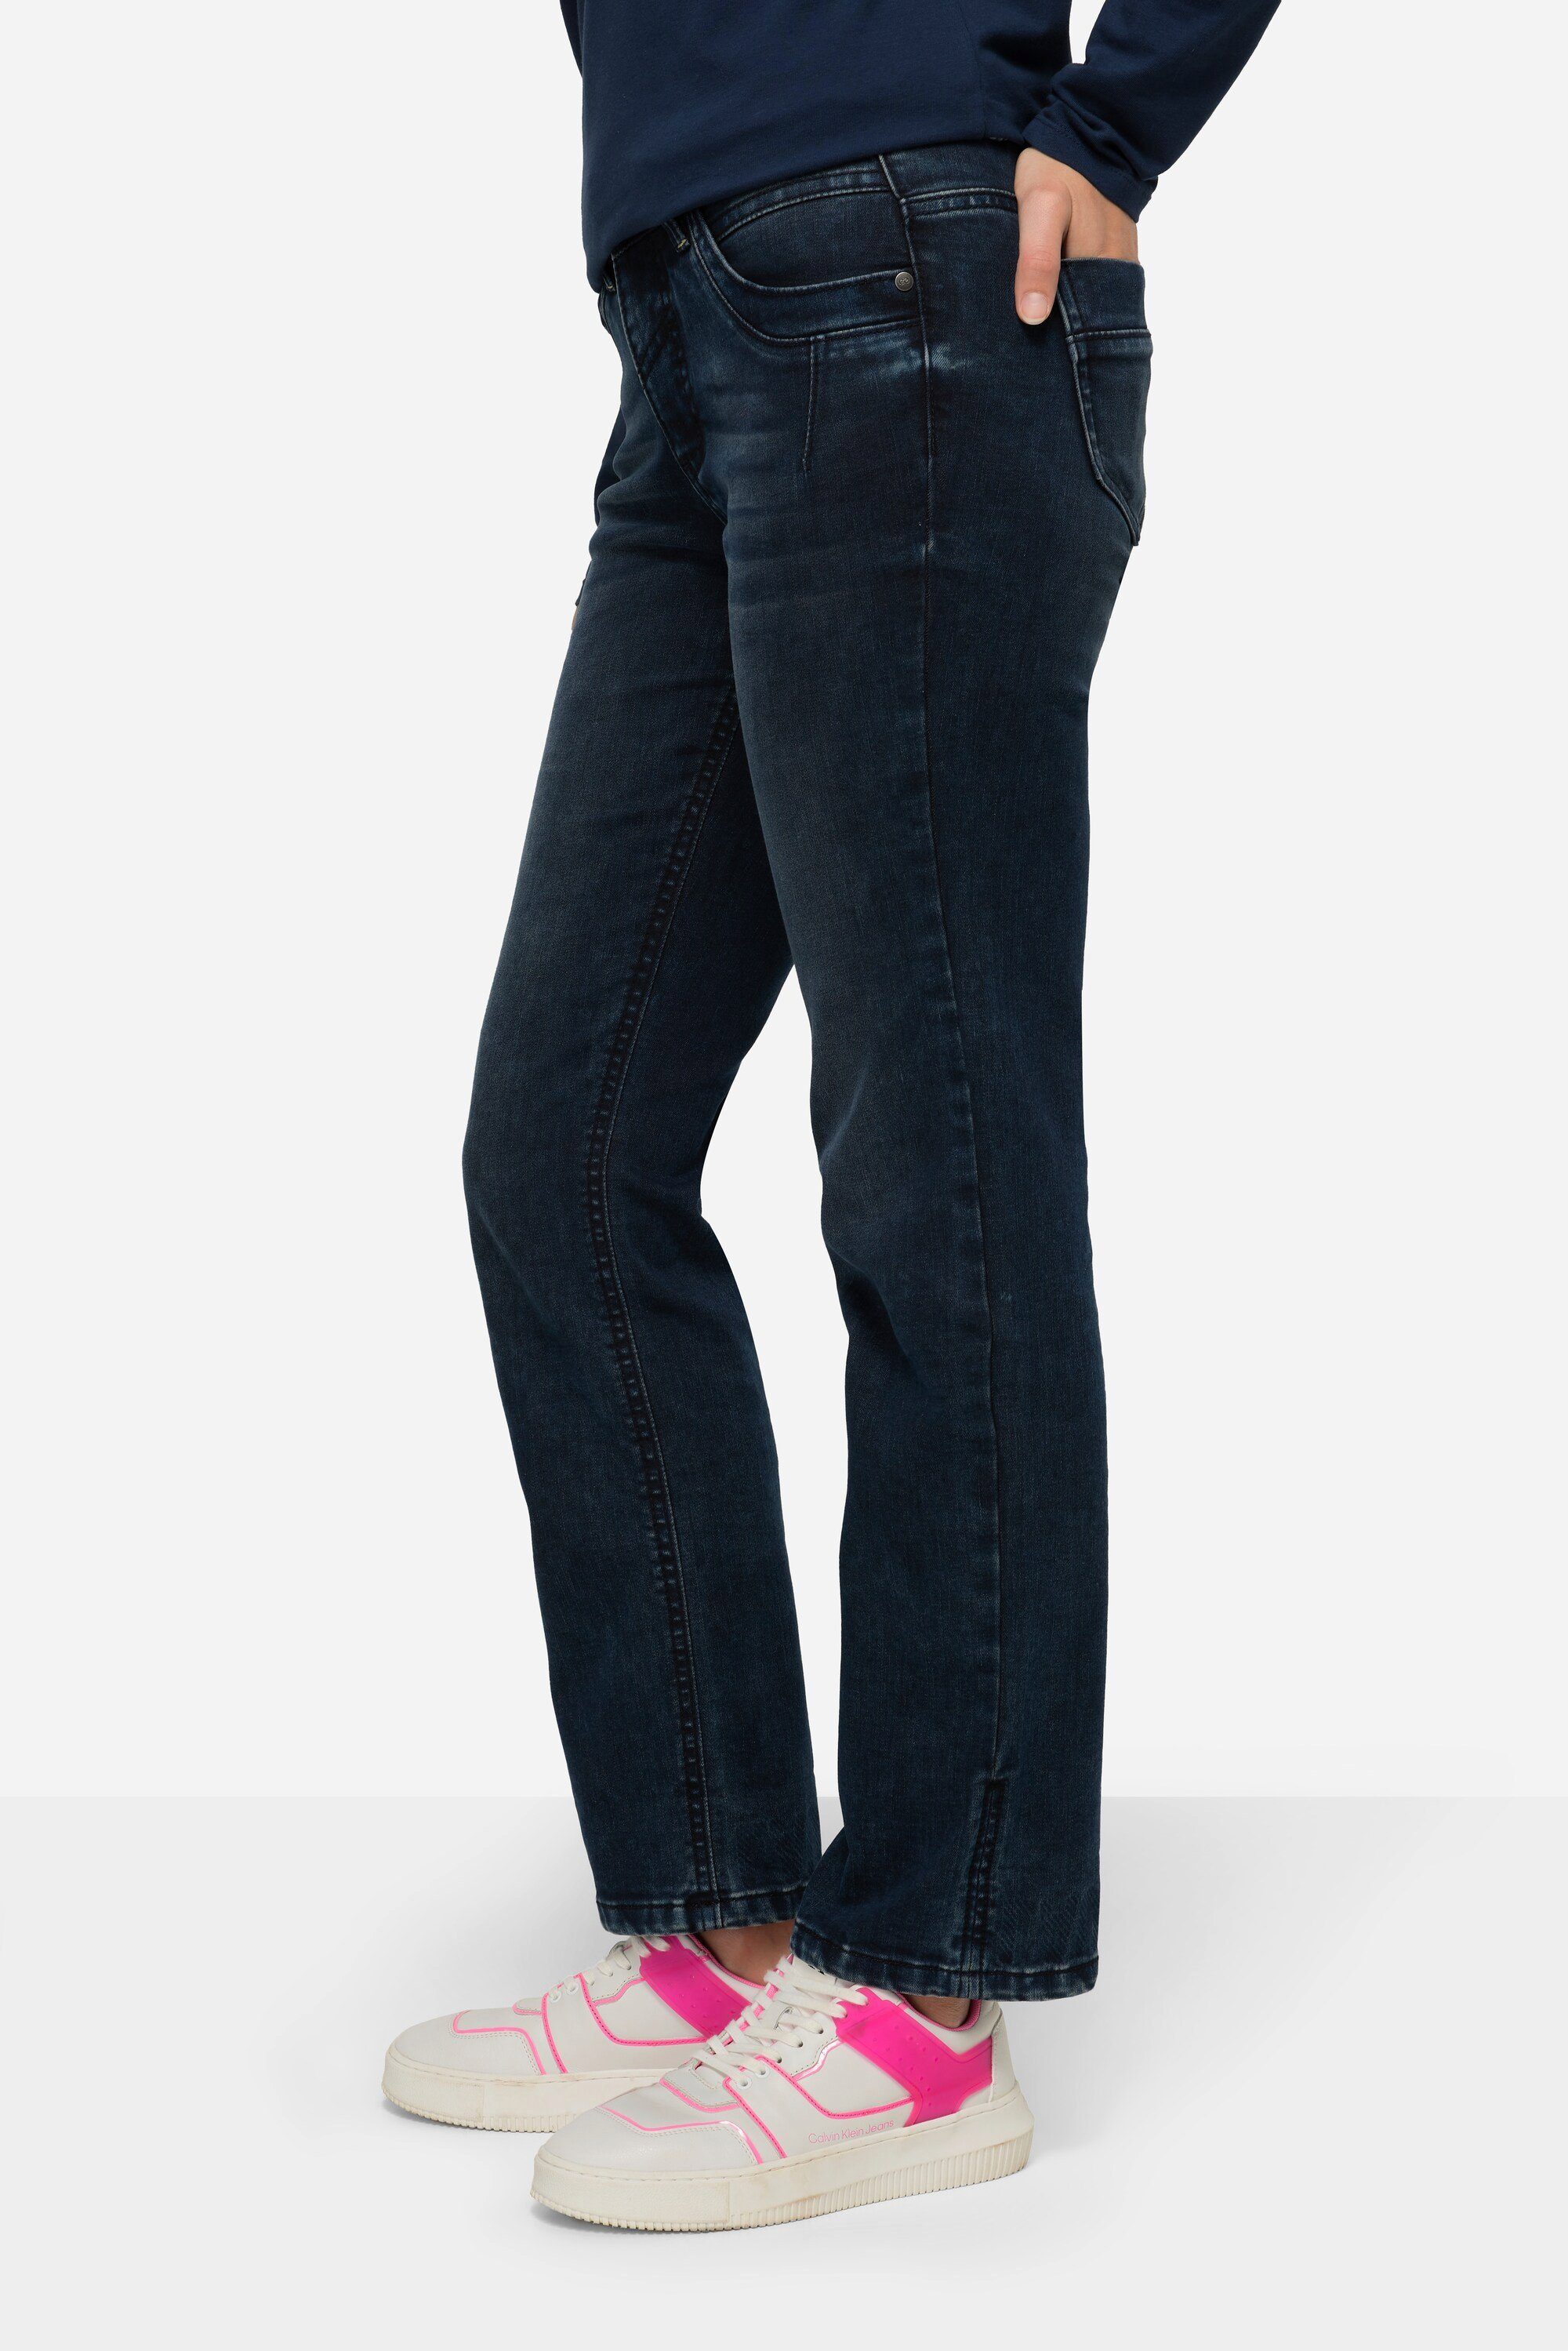 Jeans 5-Pocket-Jeans Fit Straight Laurasøn 5-Pocket